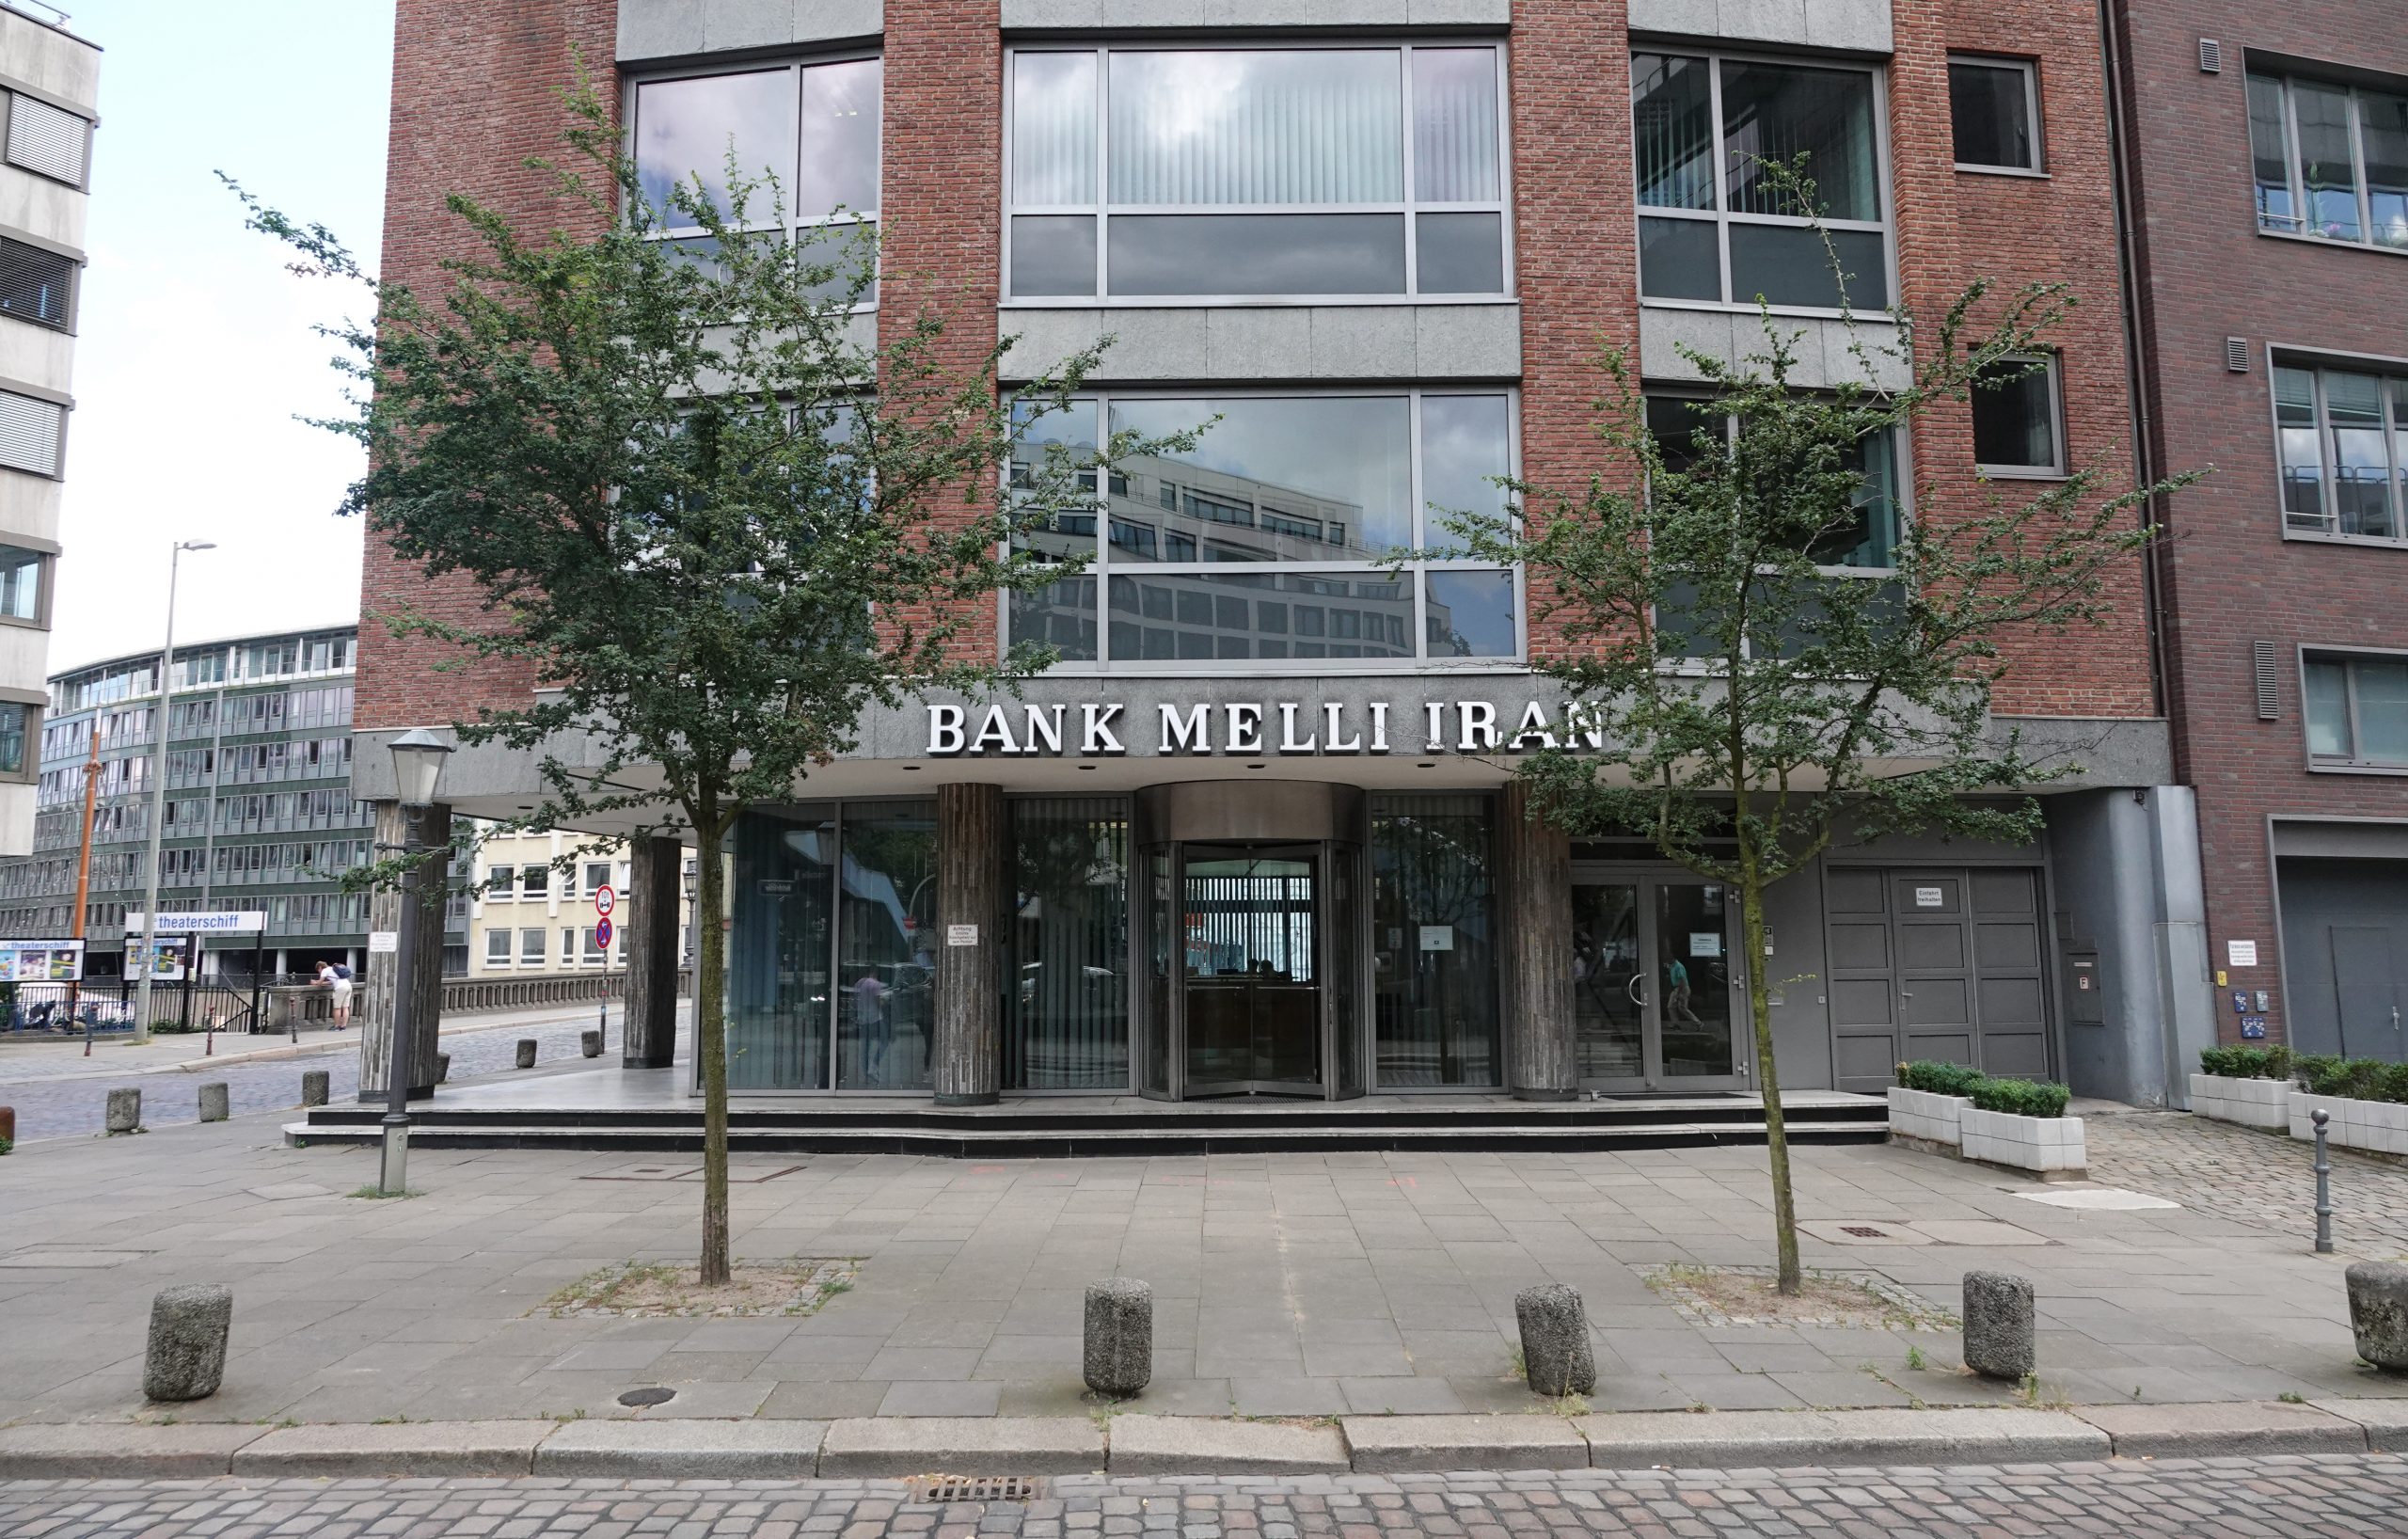 Der Eingang der Bank Melli Iran an der Straße Holzbrücke in Hamburg.